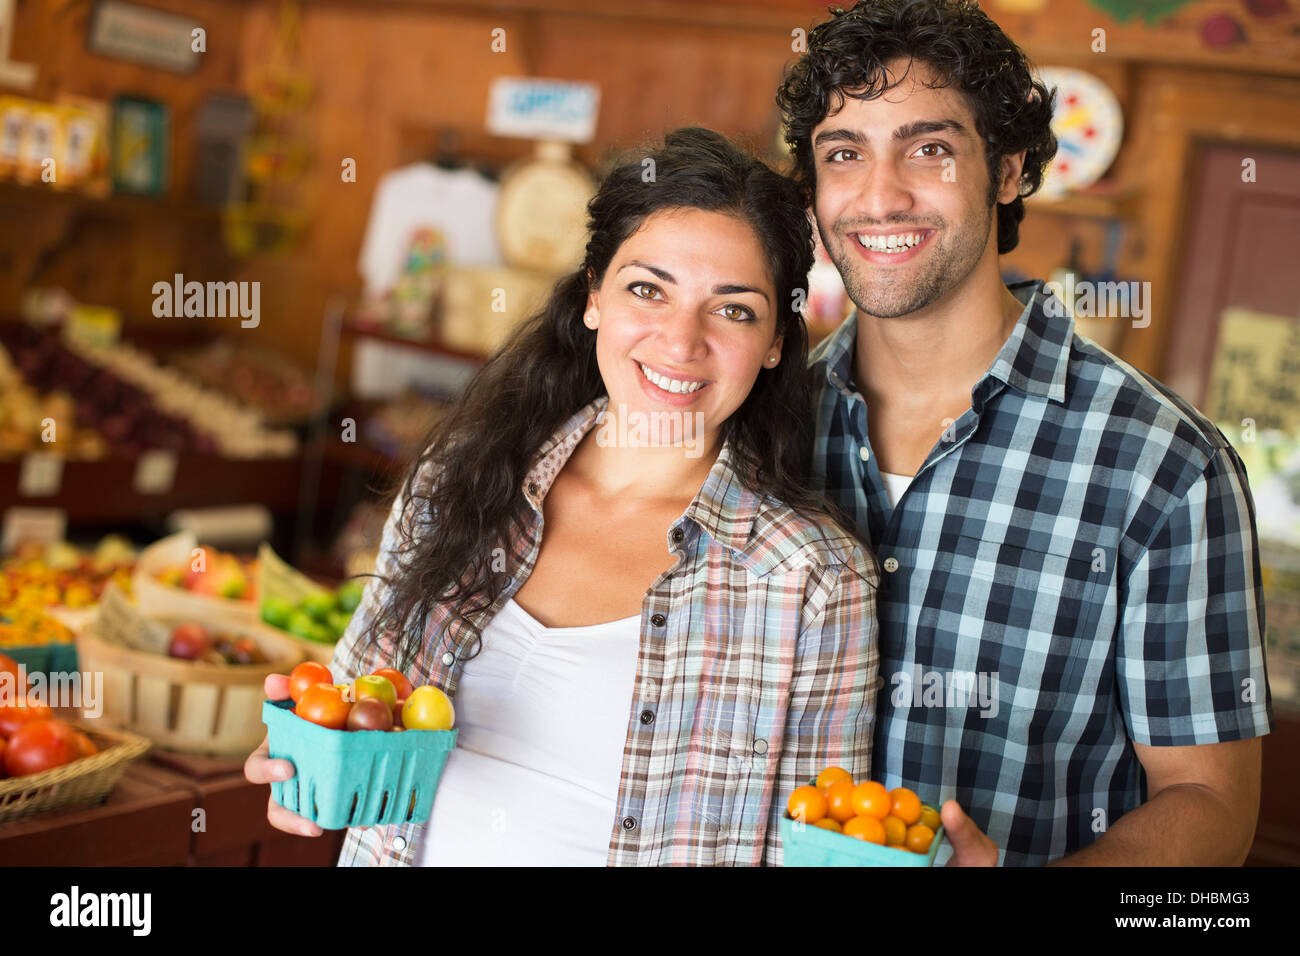 Ein Bauernhof, Anbau und Verkauf von Bio-Gemüse und Obst. Ein Mann und eine Frau zusammen arbeiten. Stockfoto